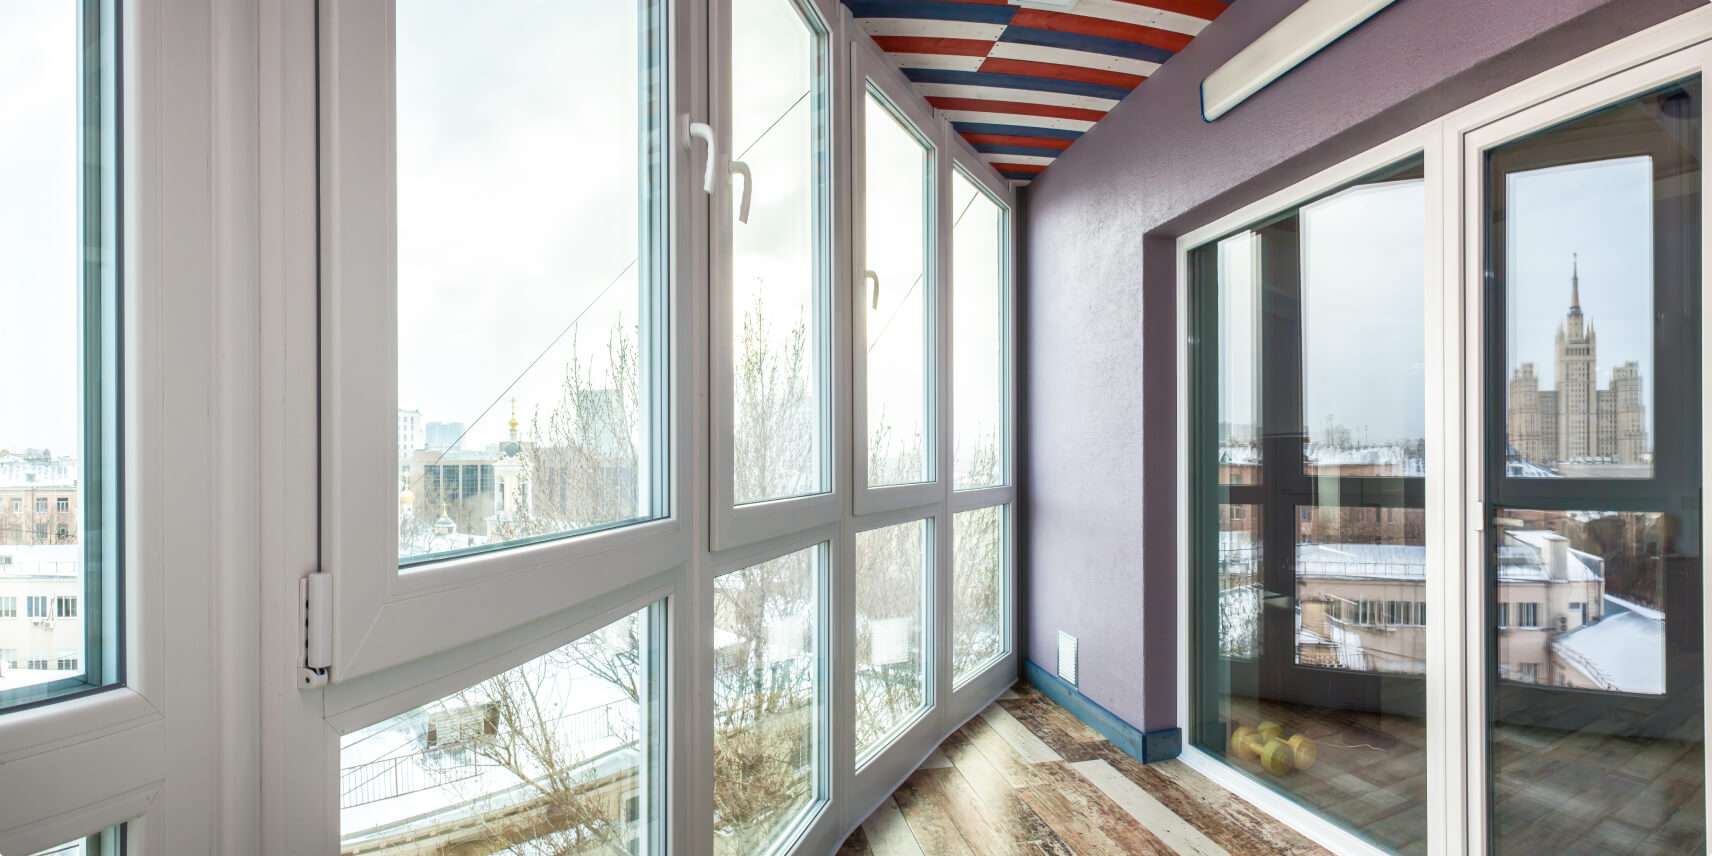 Балкон с панорамным остеклением дизайн интерьера (61 фото)